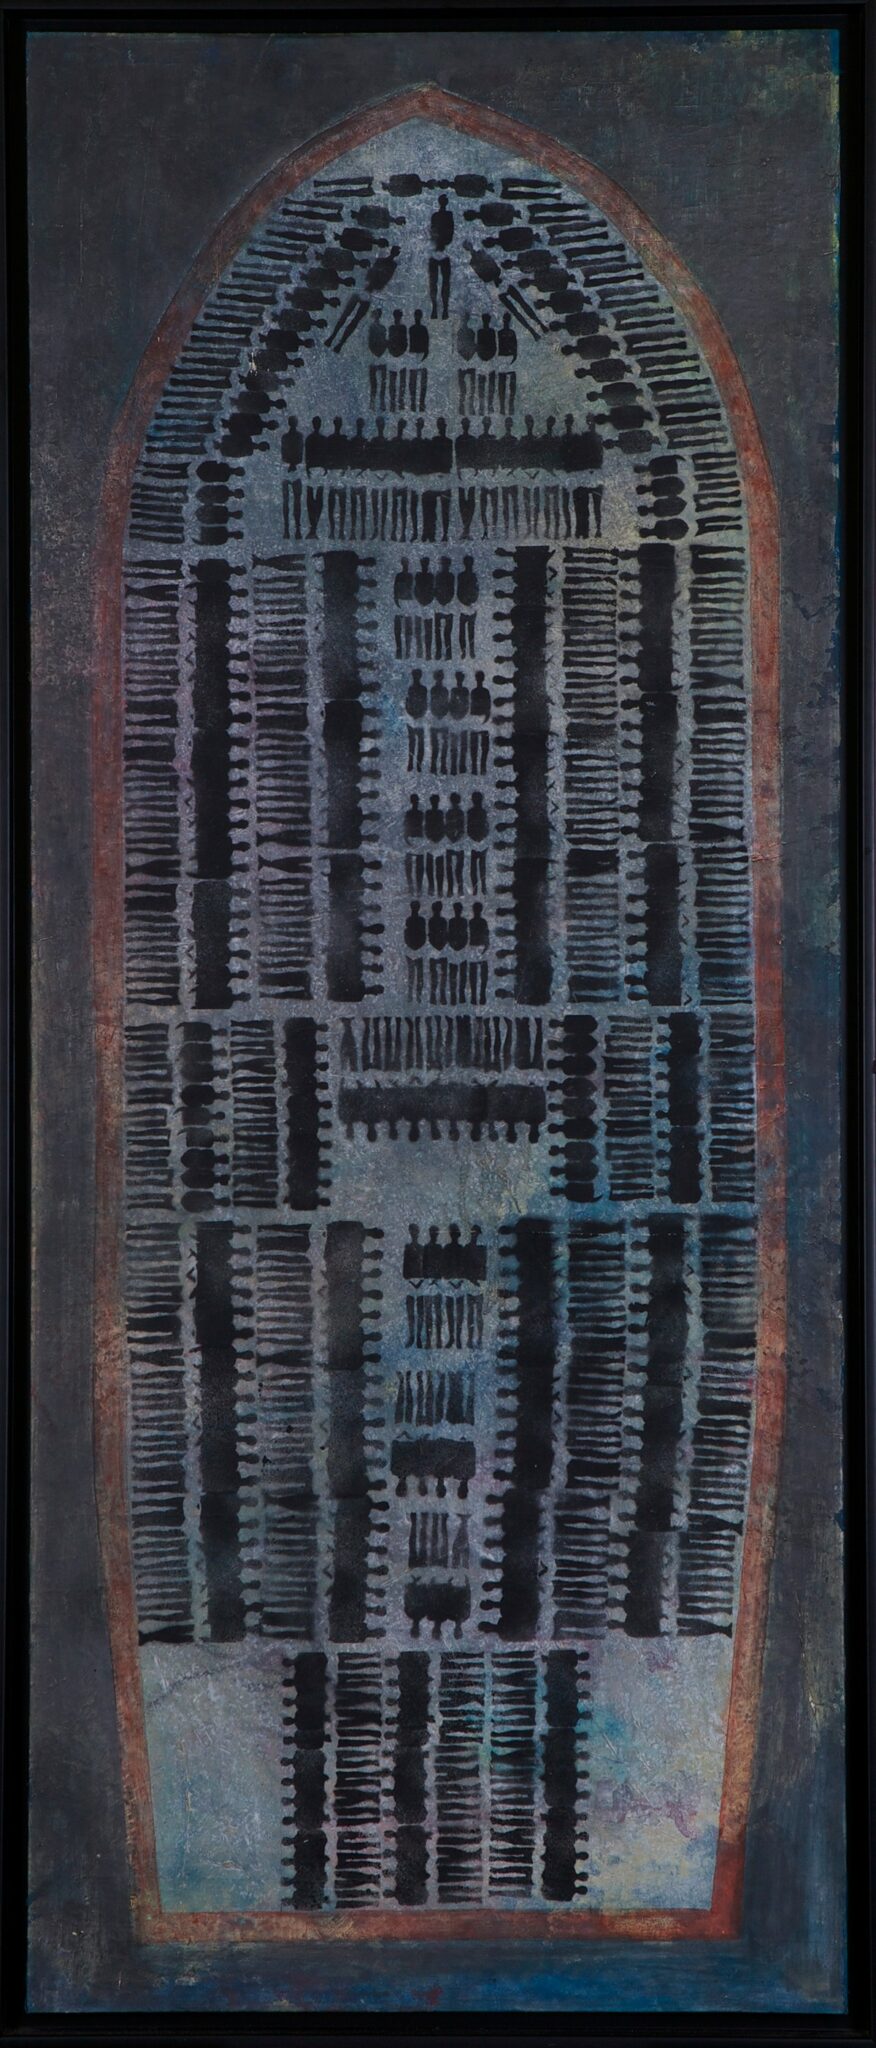 Wilhiam Zitte, Au plaisir du colon, 1991, Huile sur toile, 140 x 57 cm. Collection du FRAC RÉUNION.